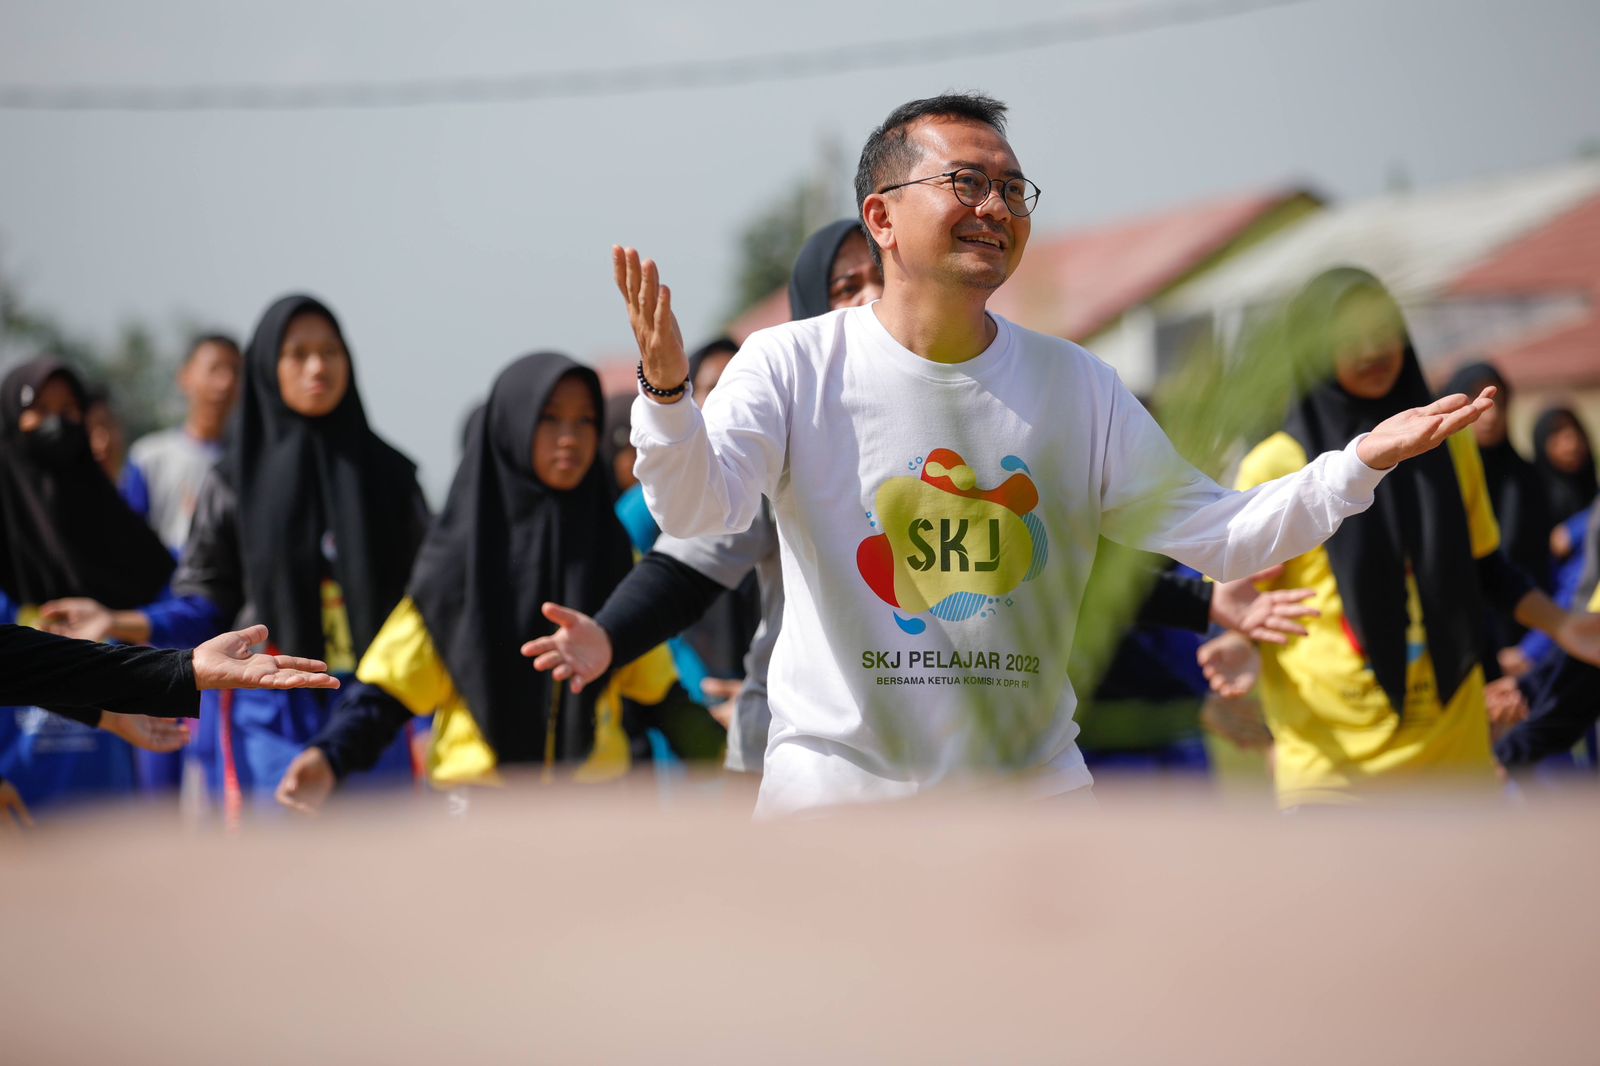 Ketua Komisi X DPR RI Syaiful Huda Sebut SKJ Pelajar 2022 Bukti Olahraga Itu Mudah dan Menyenangkan